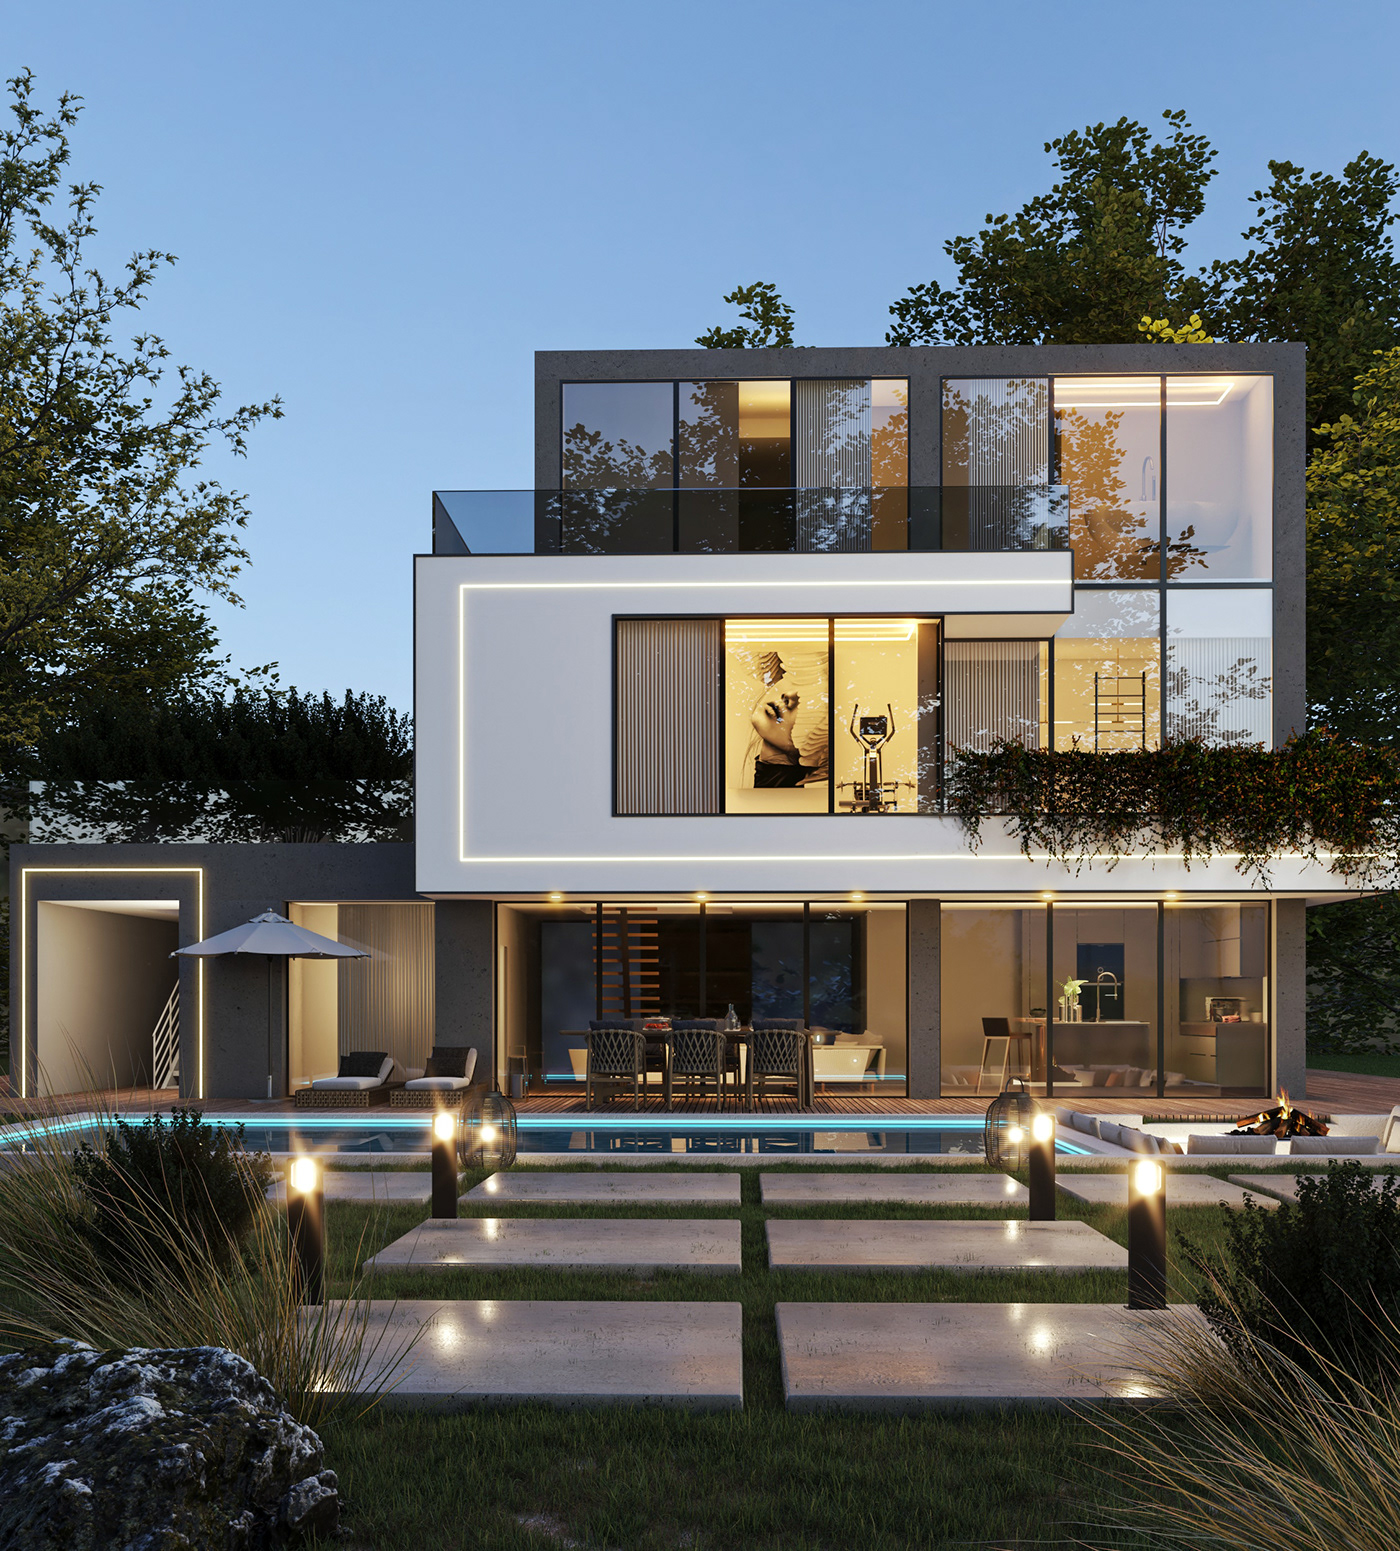 architecture exterior Villa visualization vray modern Render 3ds max CGI archviz